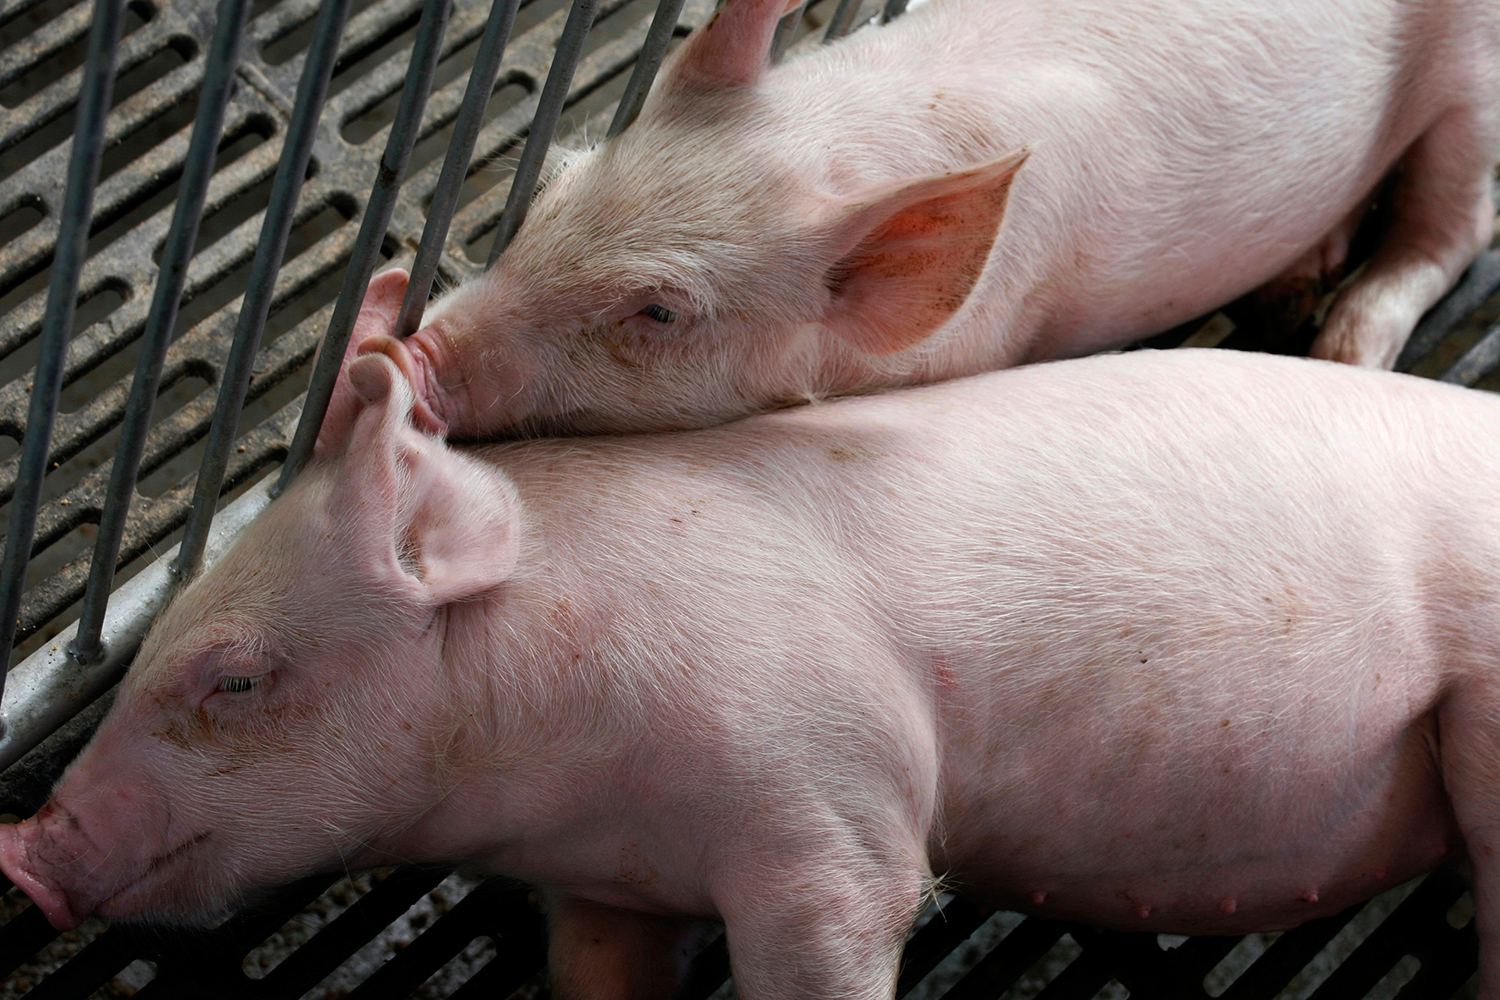 Legisladores de la UE respladan la prohibición de clonar animales